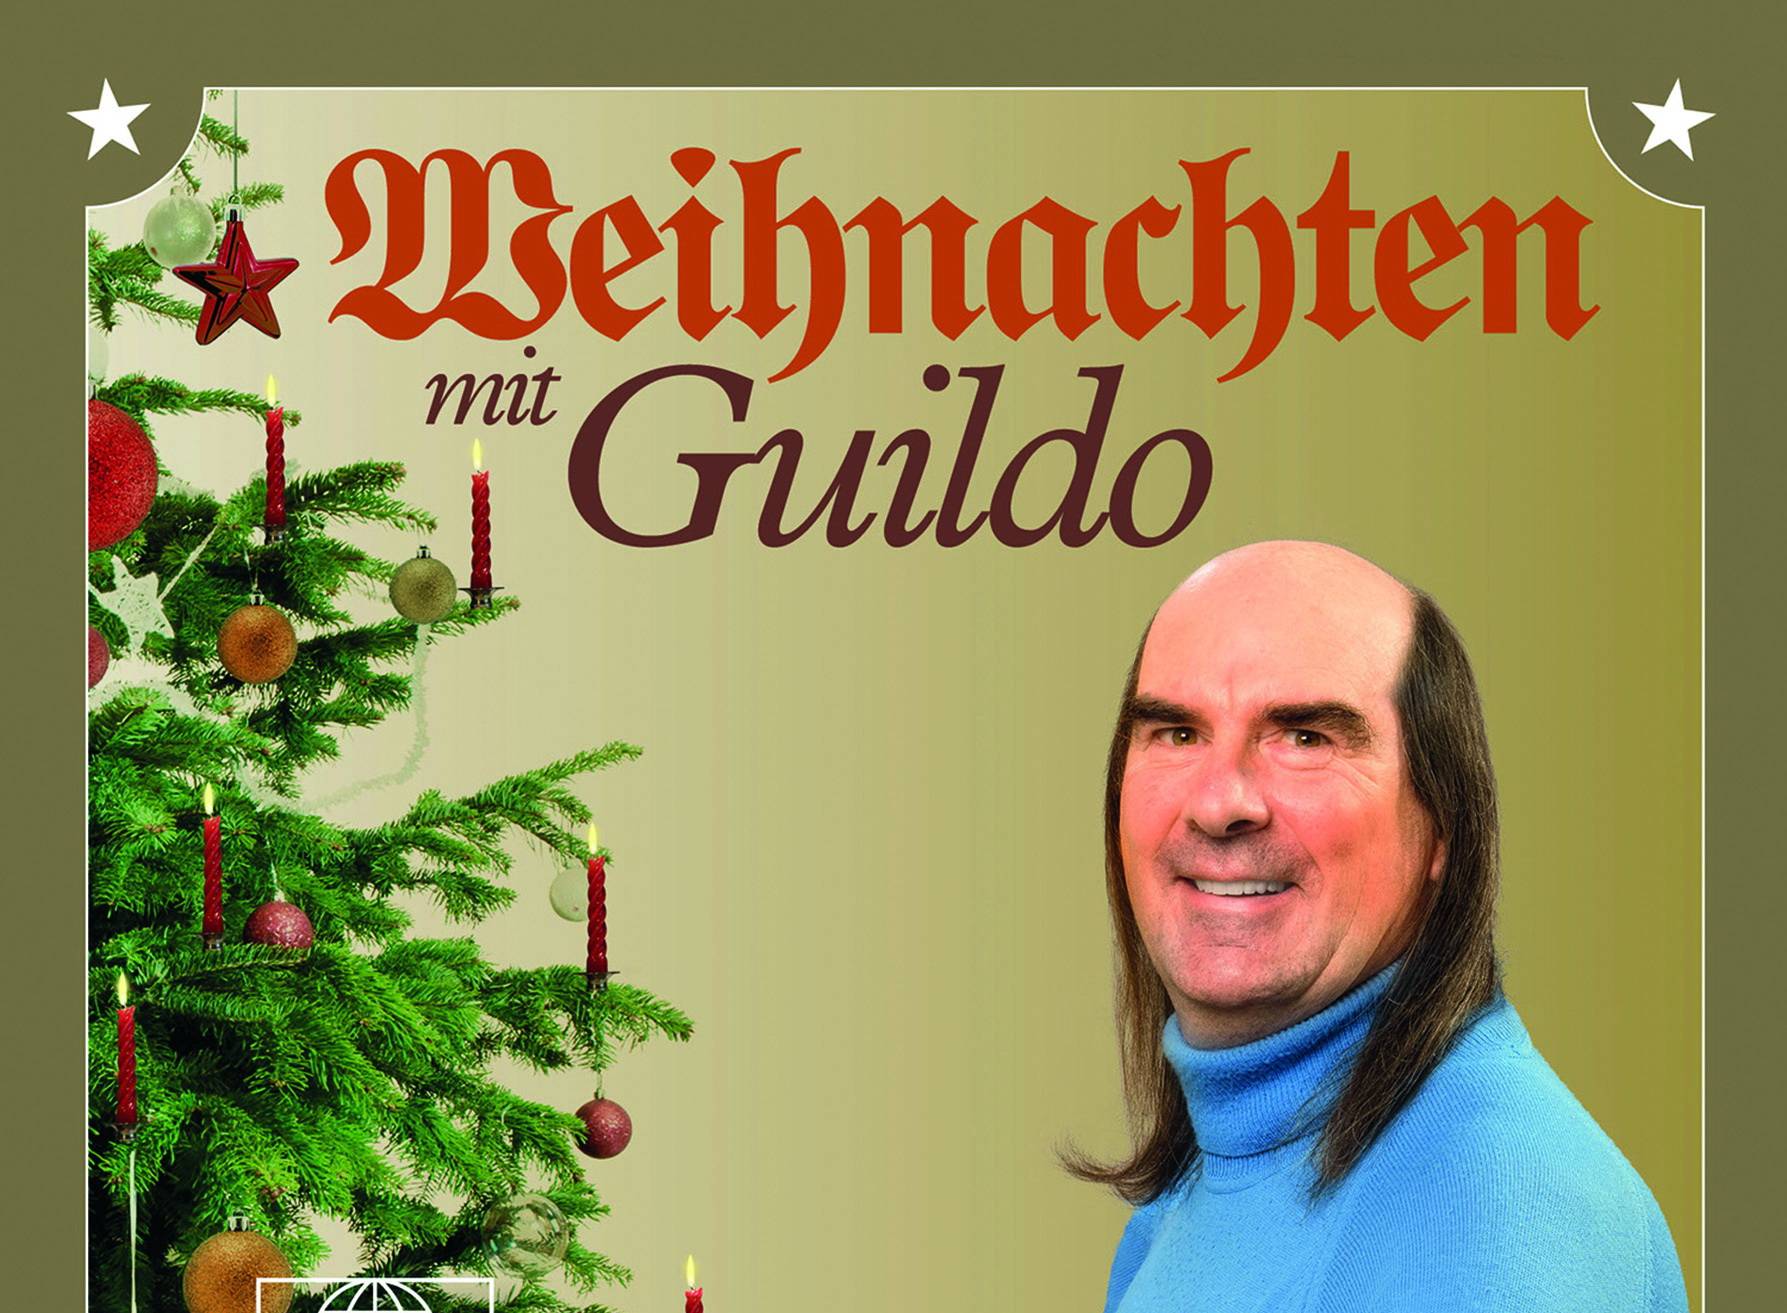 Weihnachten in Wuppertal mit Guildo